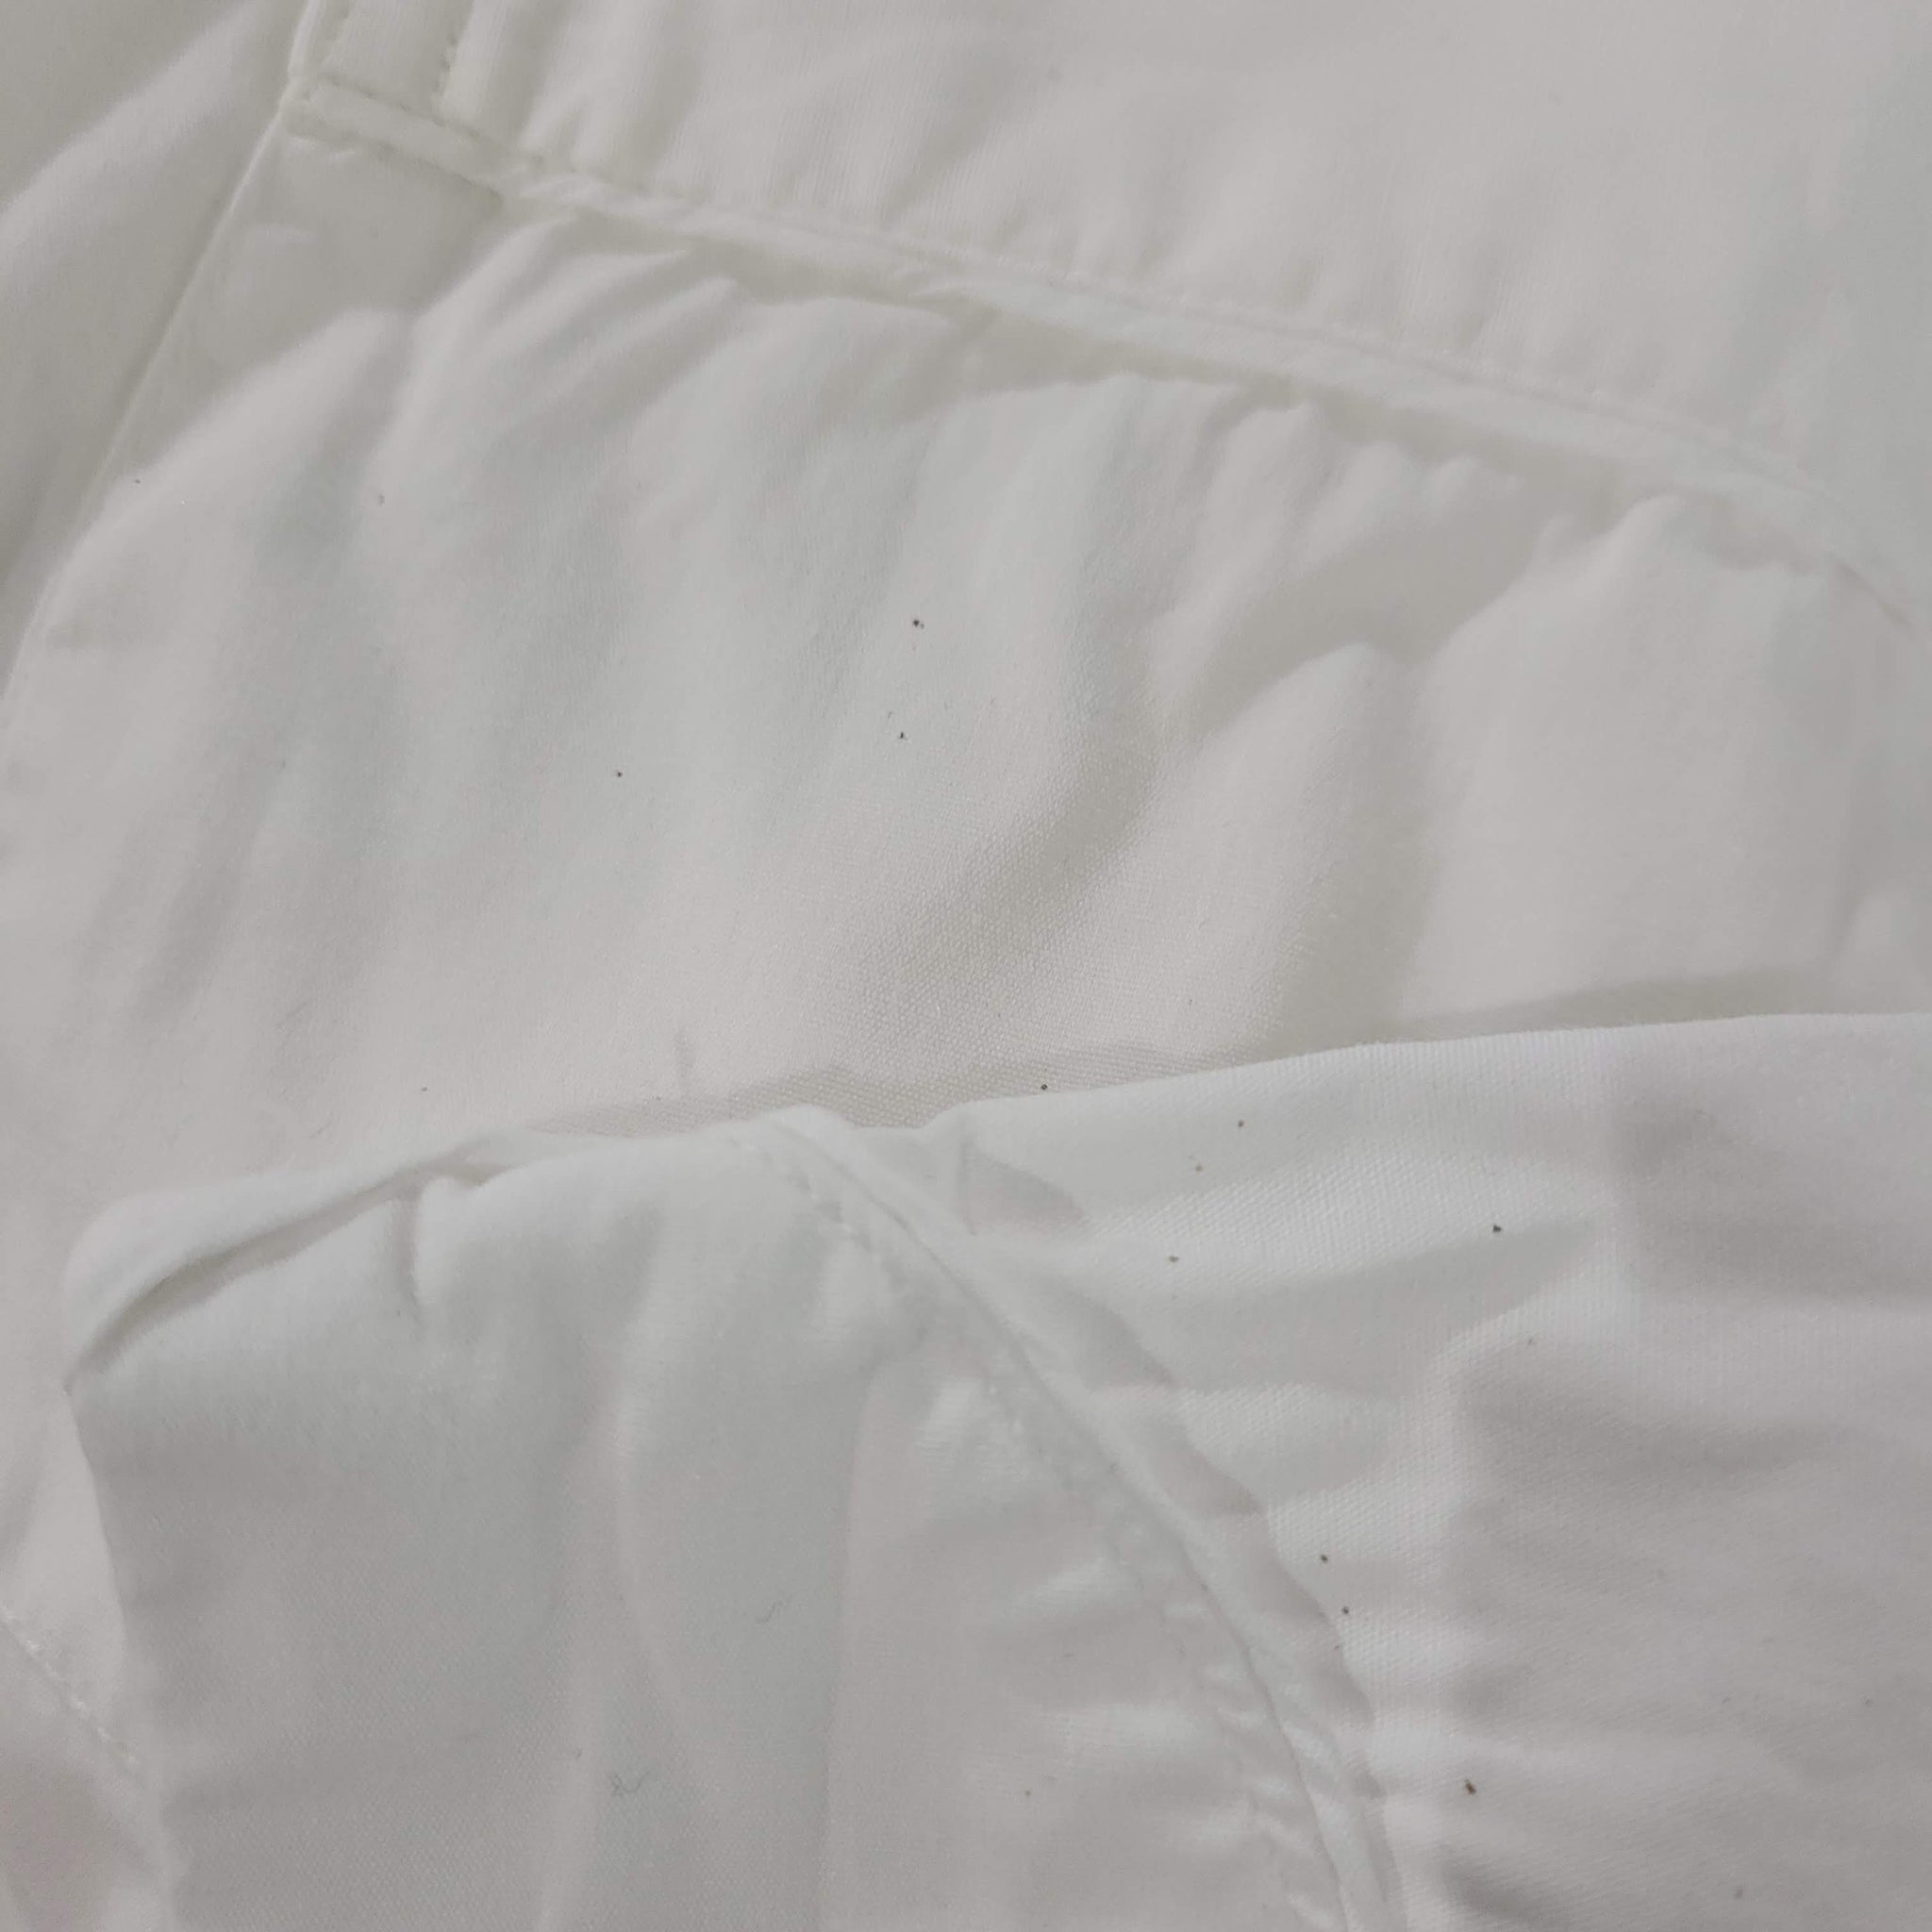 Vintage Christian Dior White Cotton Pajama Top Size Medium